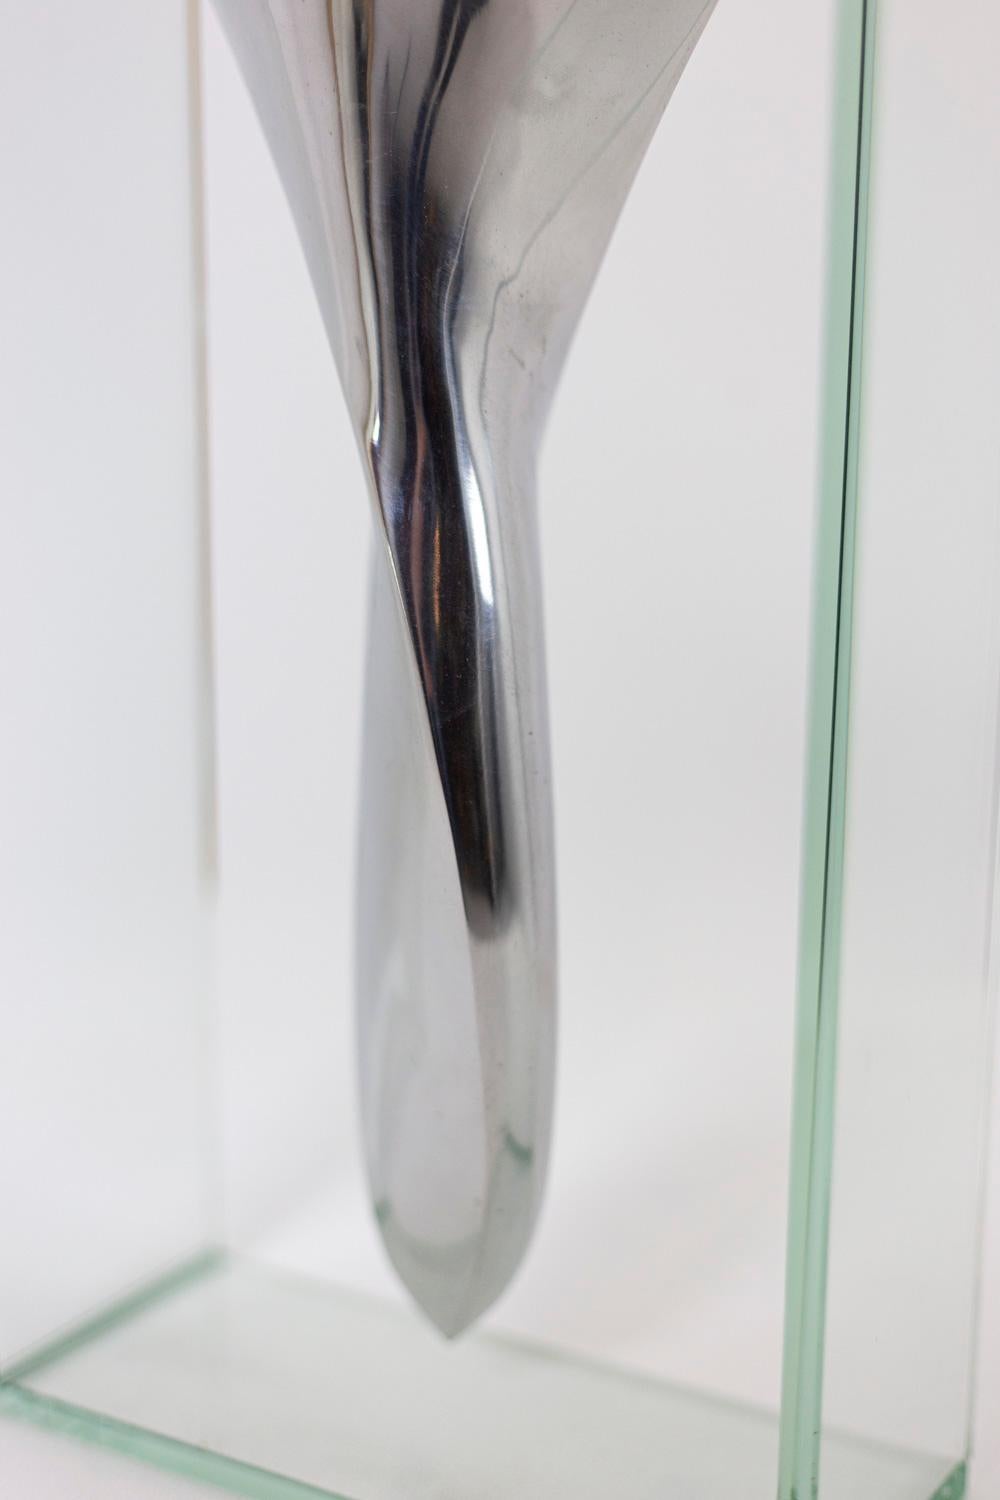 Européen Lisa Mori, Vase en aluminium et verre, années 1980 en vente